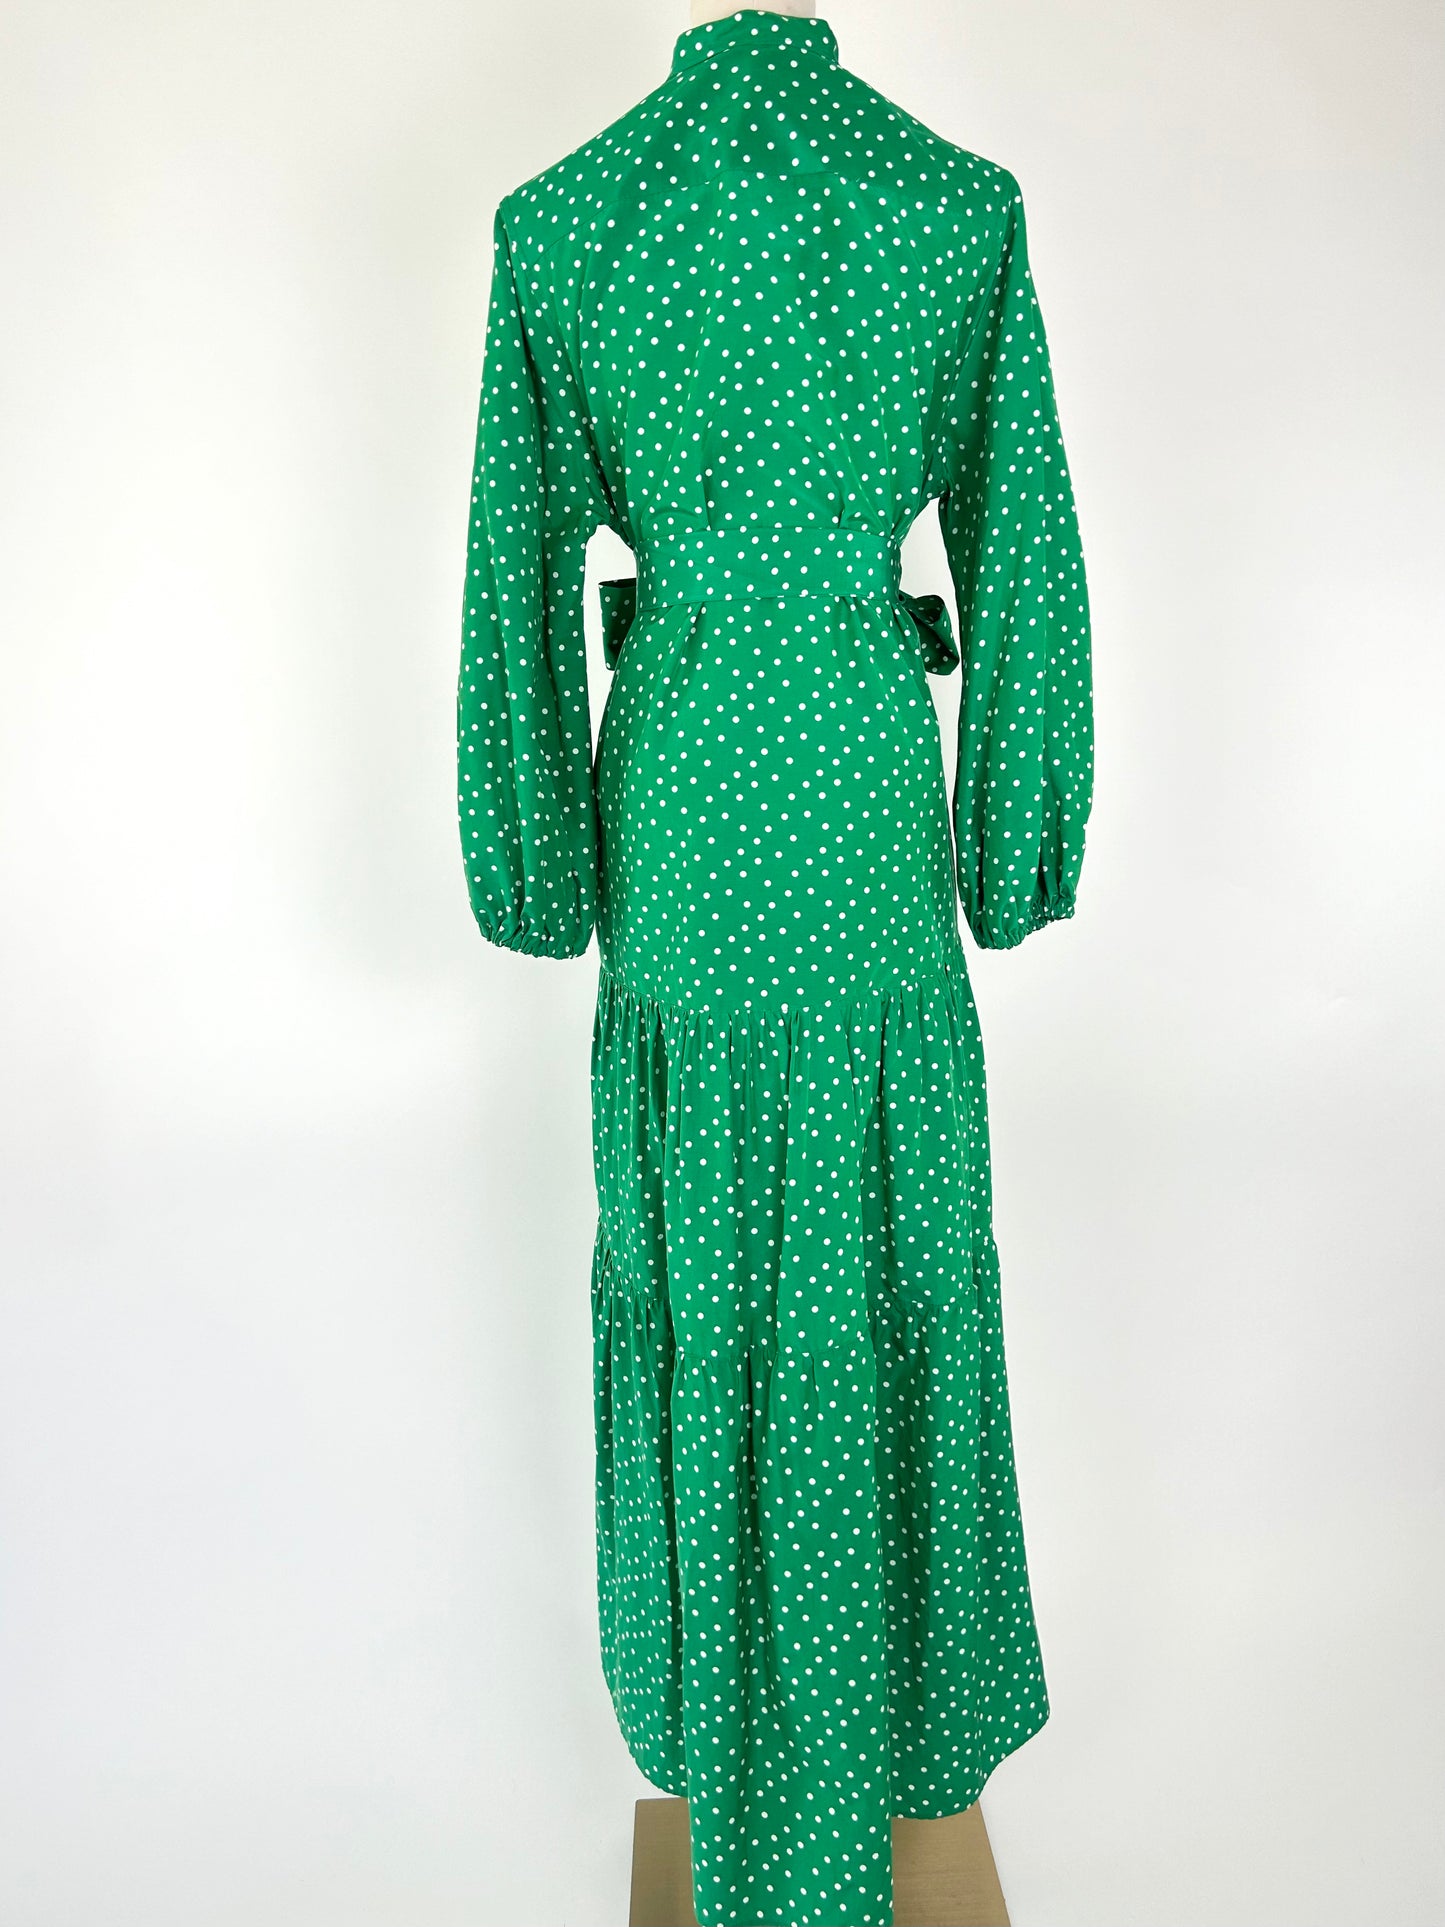 Ann Mashburn Green and White Dot Dress